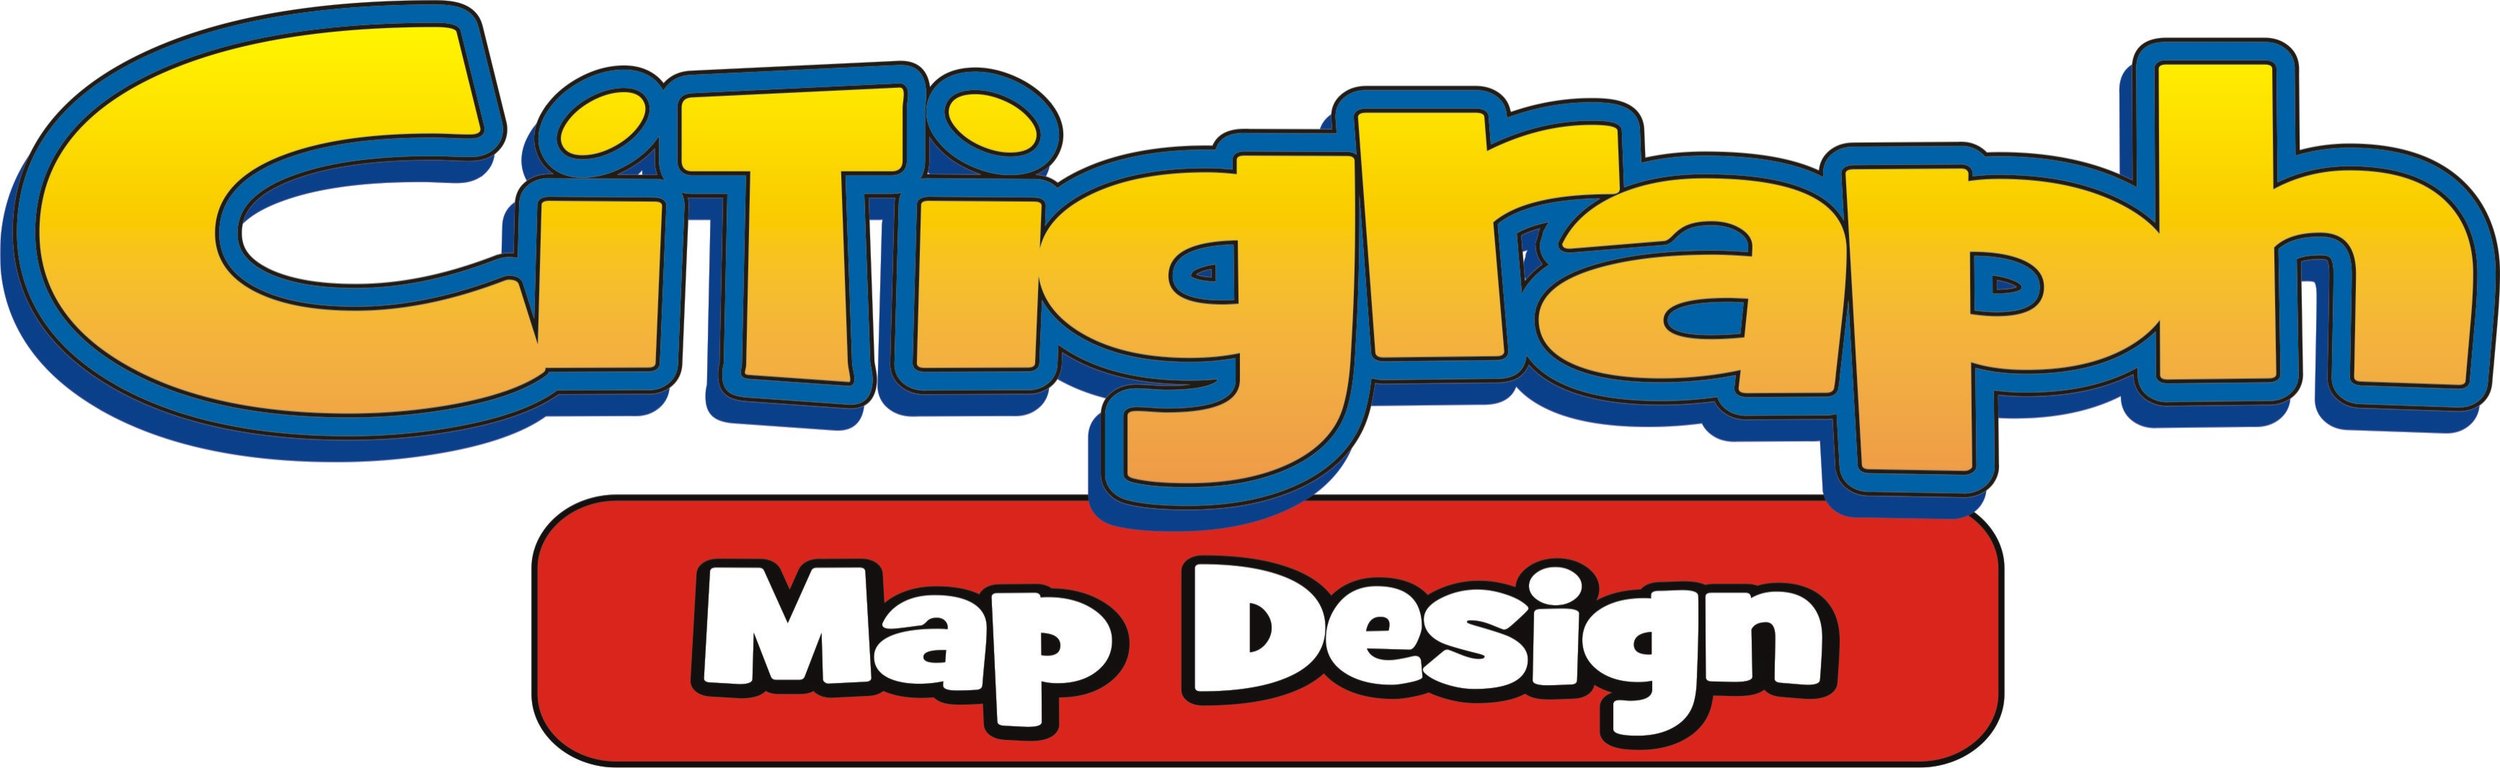 Citigraph Theme Park Map Design